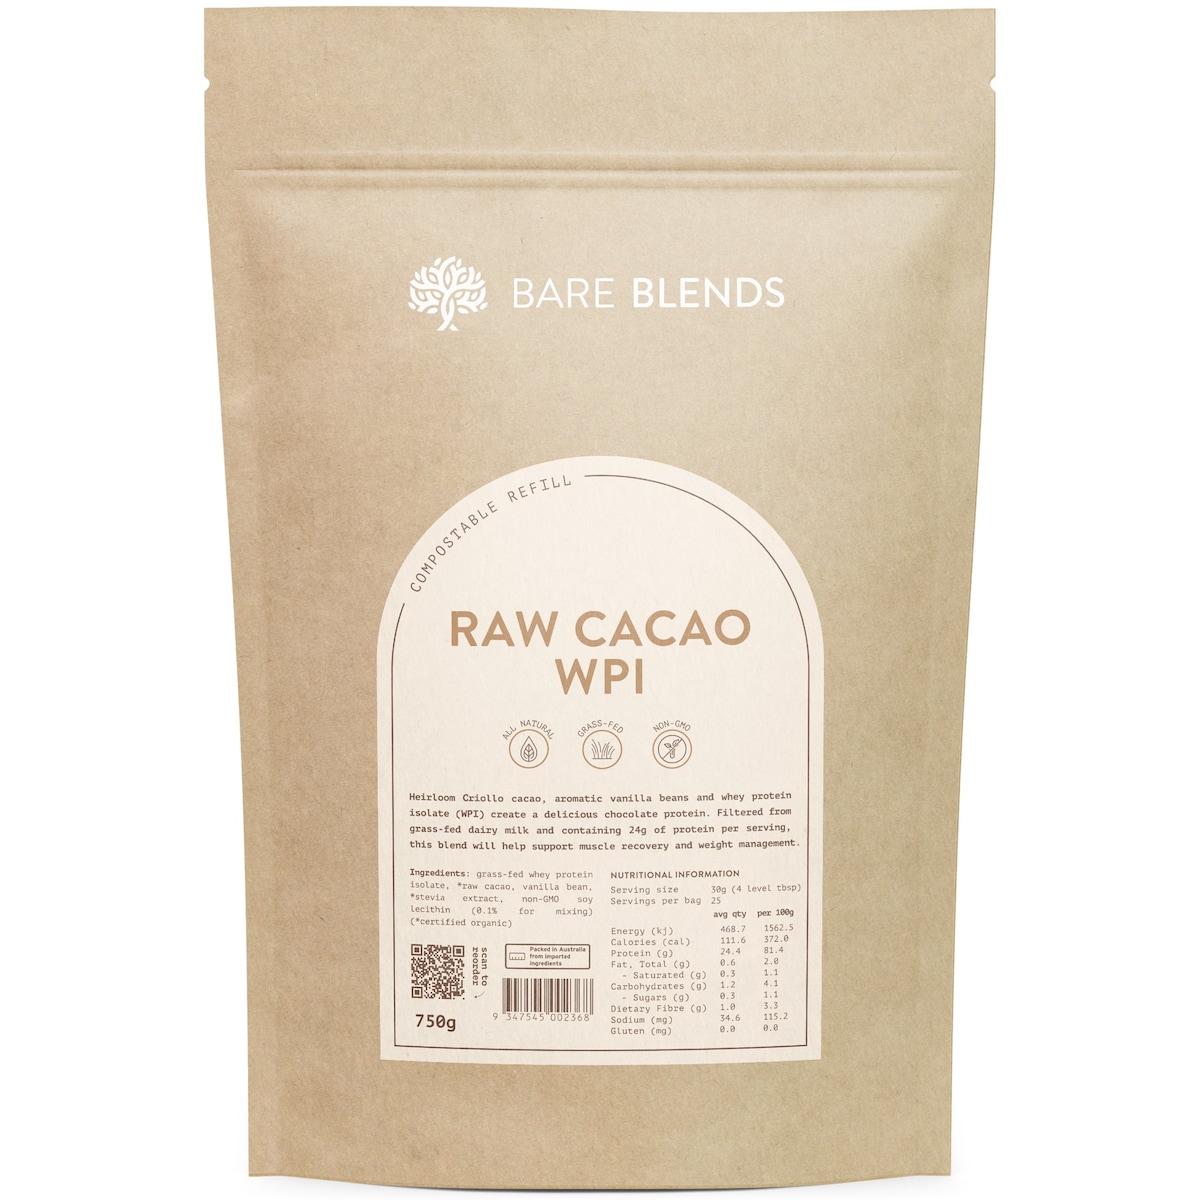 Bare Blends WPI Raw Cacao 750g Australia